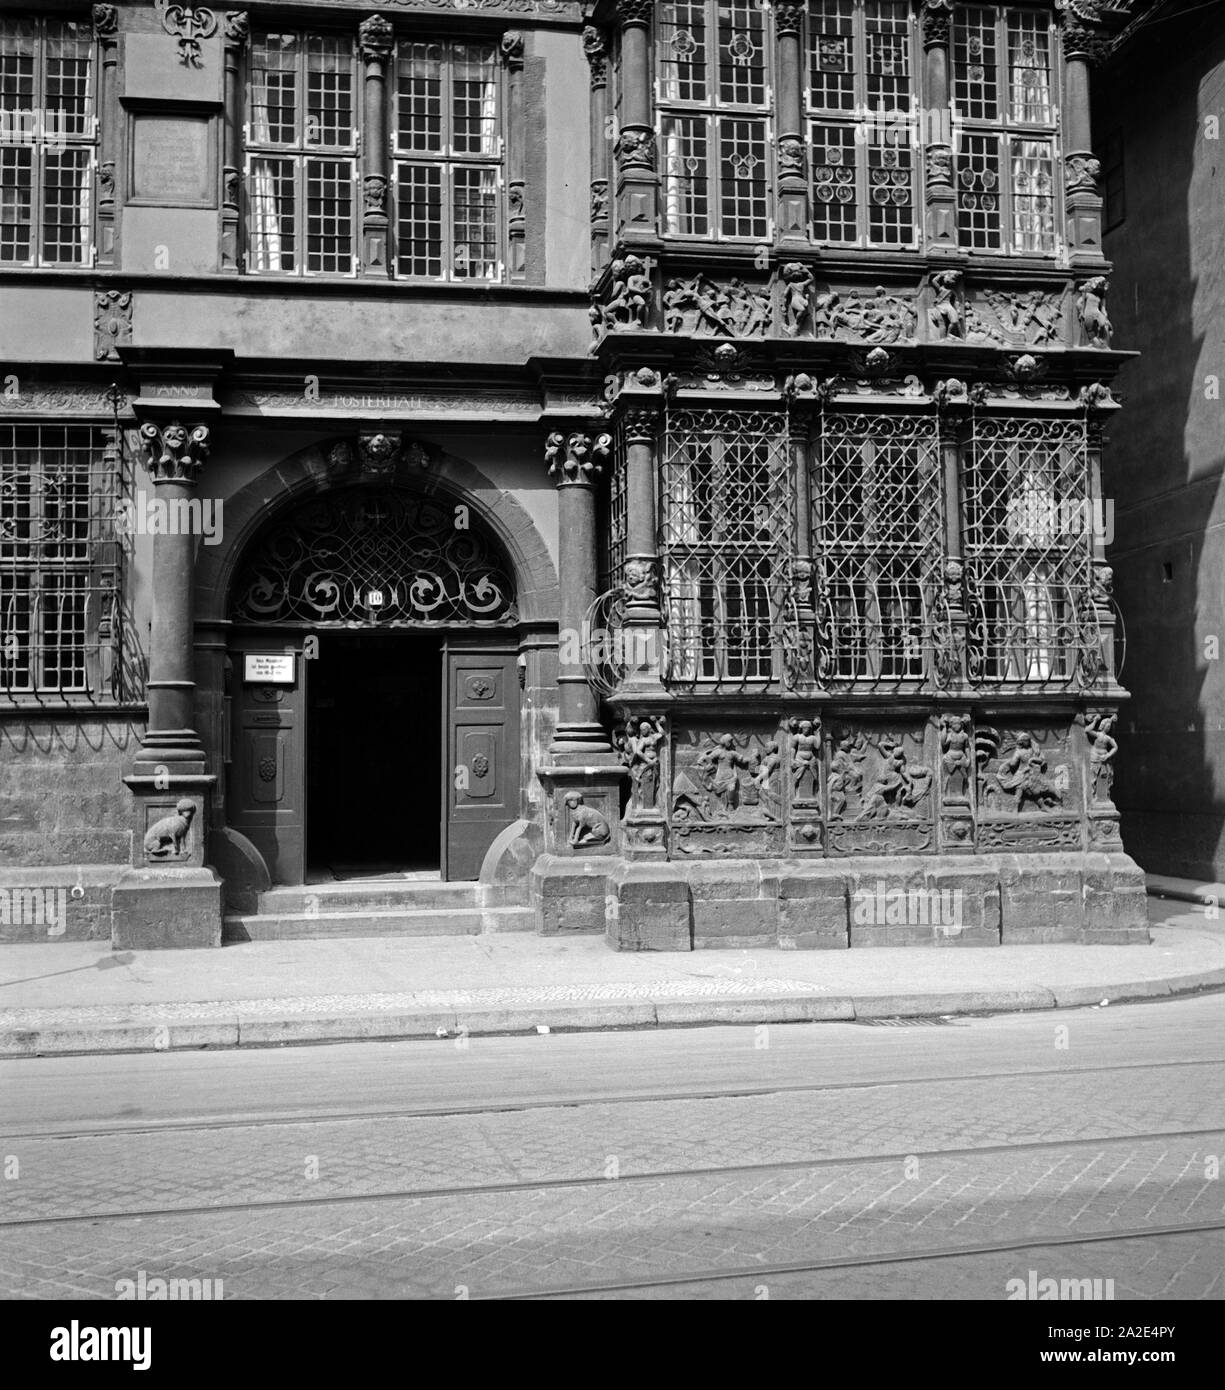 Erdgeschoß Eingangsbereich und erster Stock, suis Leibnizhaus à Hannover, Deutschland 1930er Jahre. Rez-de-chaussée, entrée et premier étage de l'Leibnihaus à Hanovre, Allemagne 1930. Banque D'Images